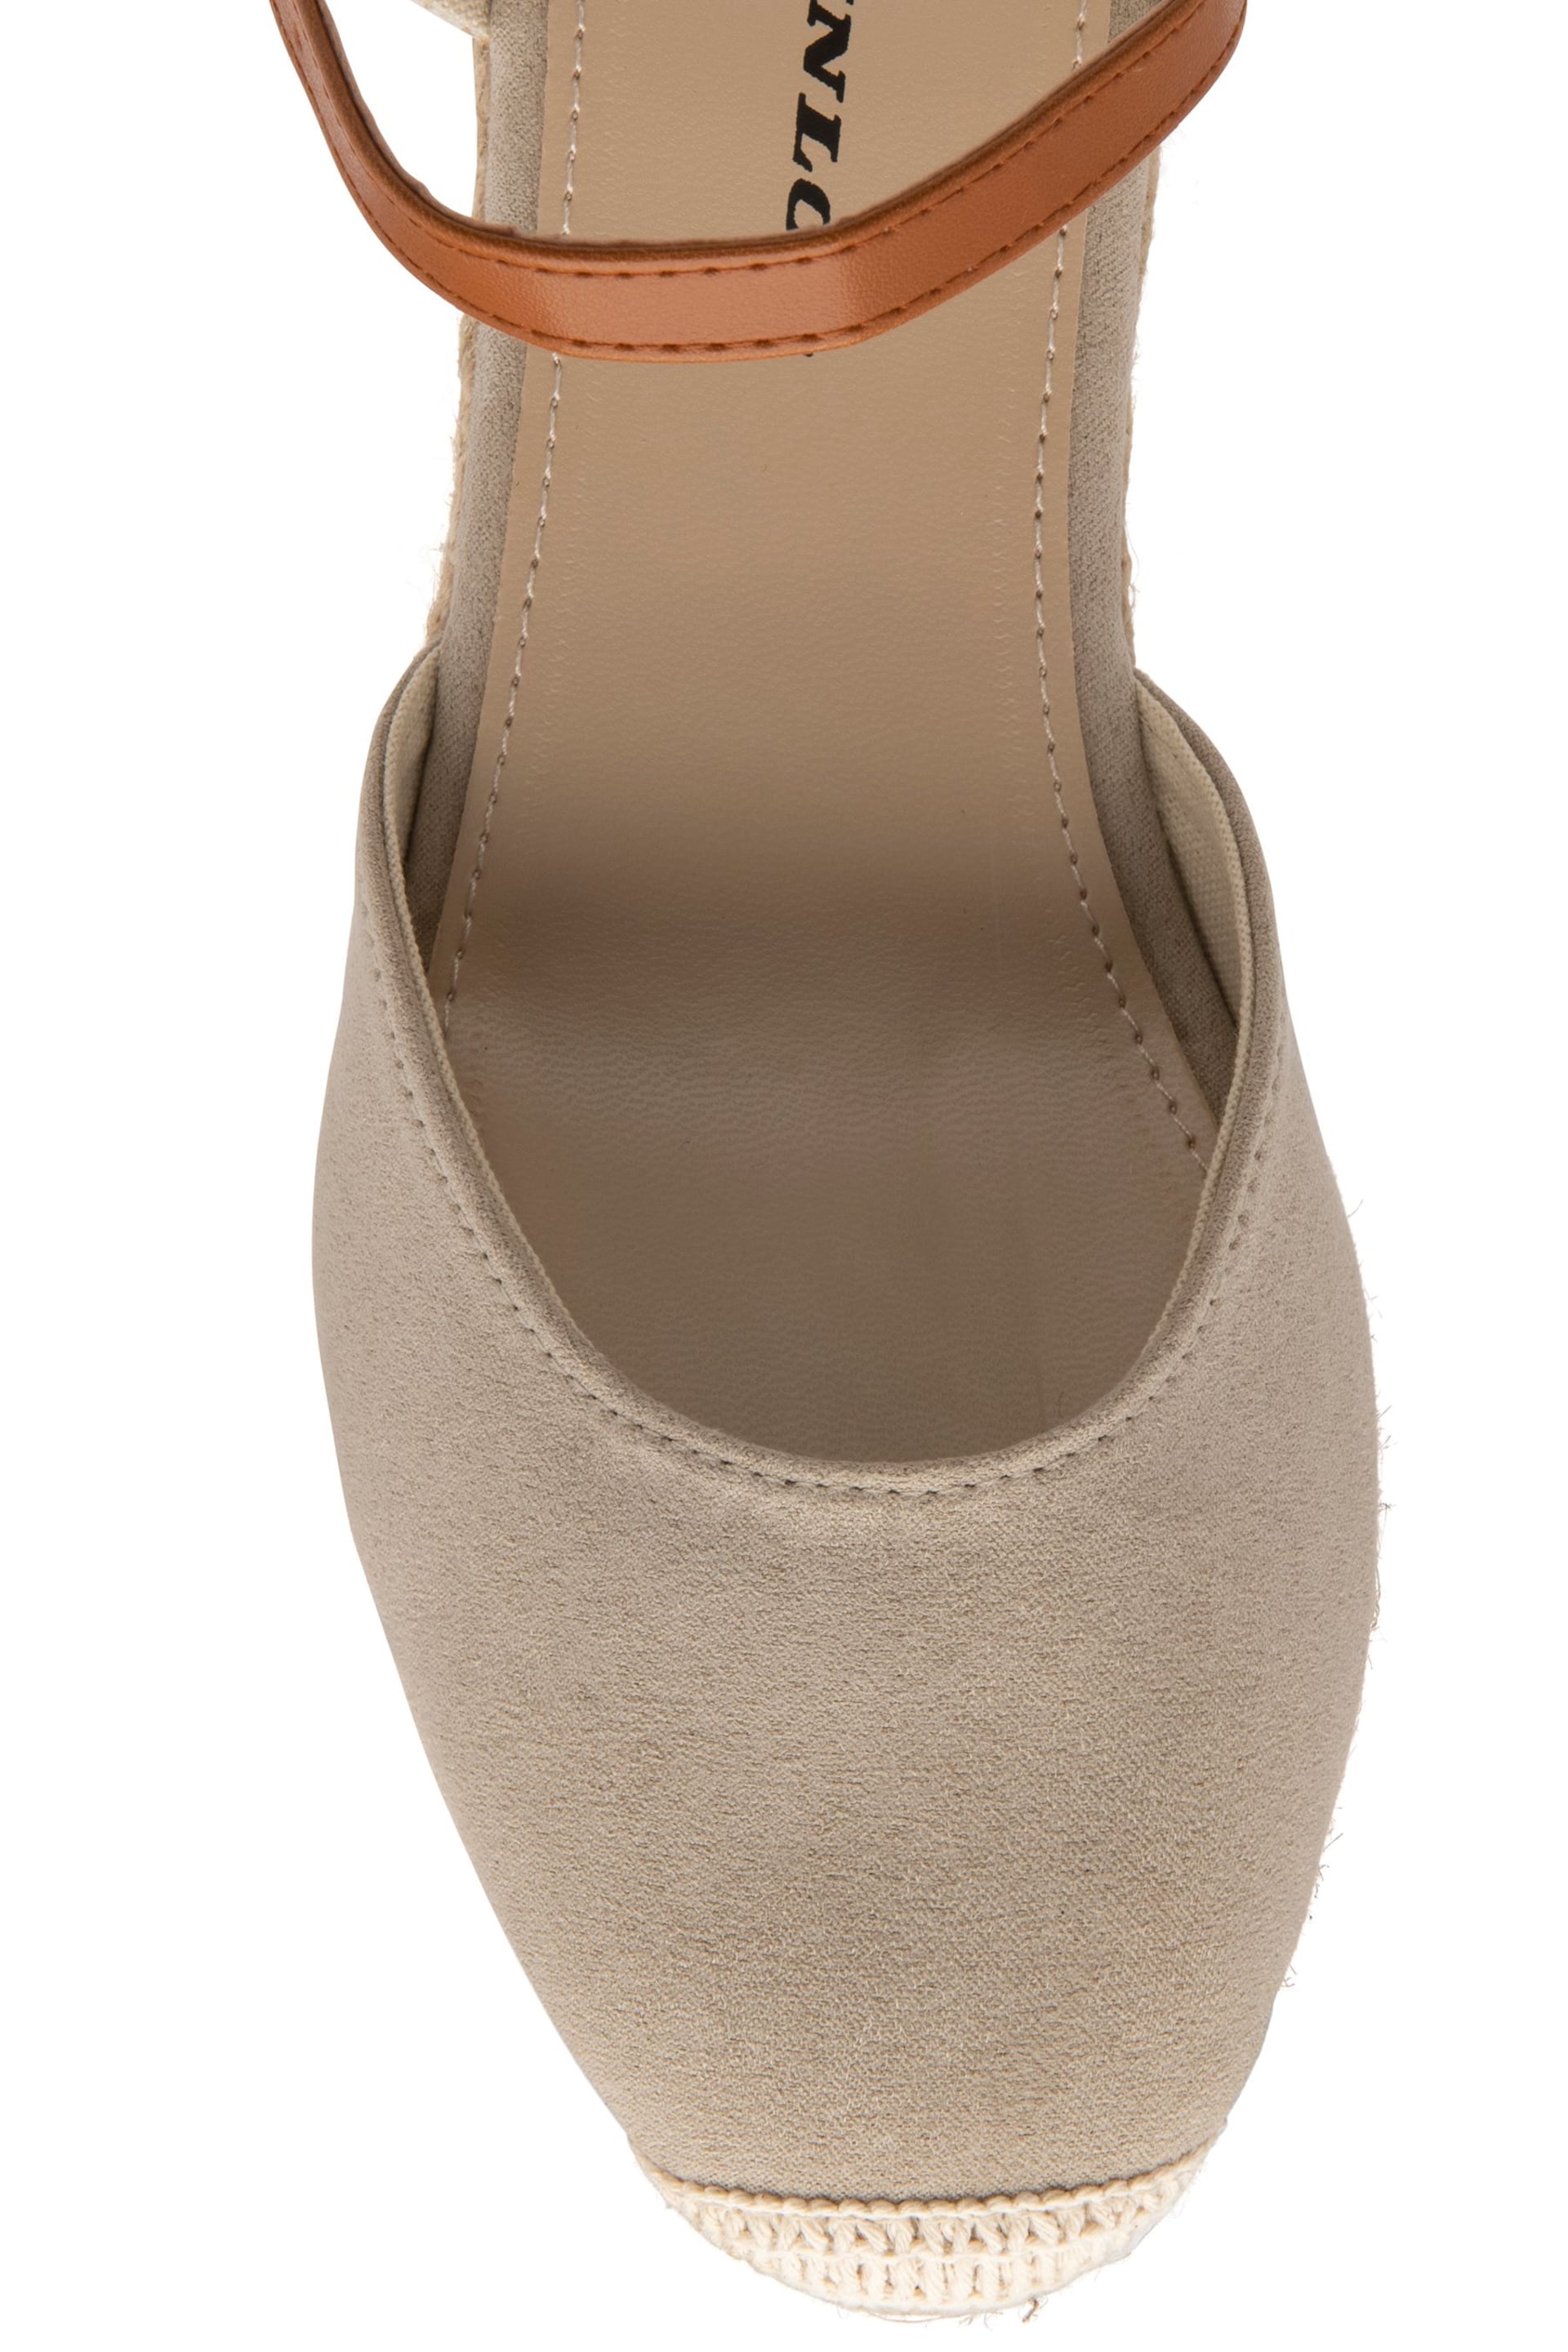 Dunlop Cream Ladies Wedge Espadrille Sandals - Image 4 of 4